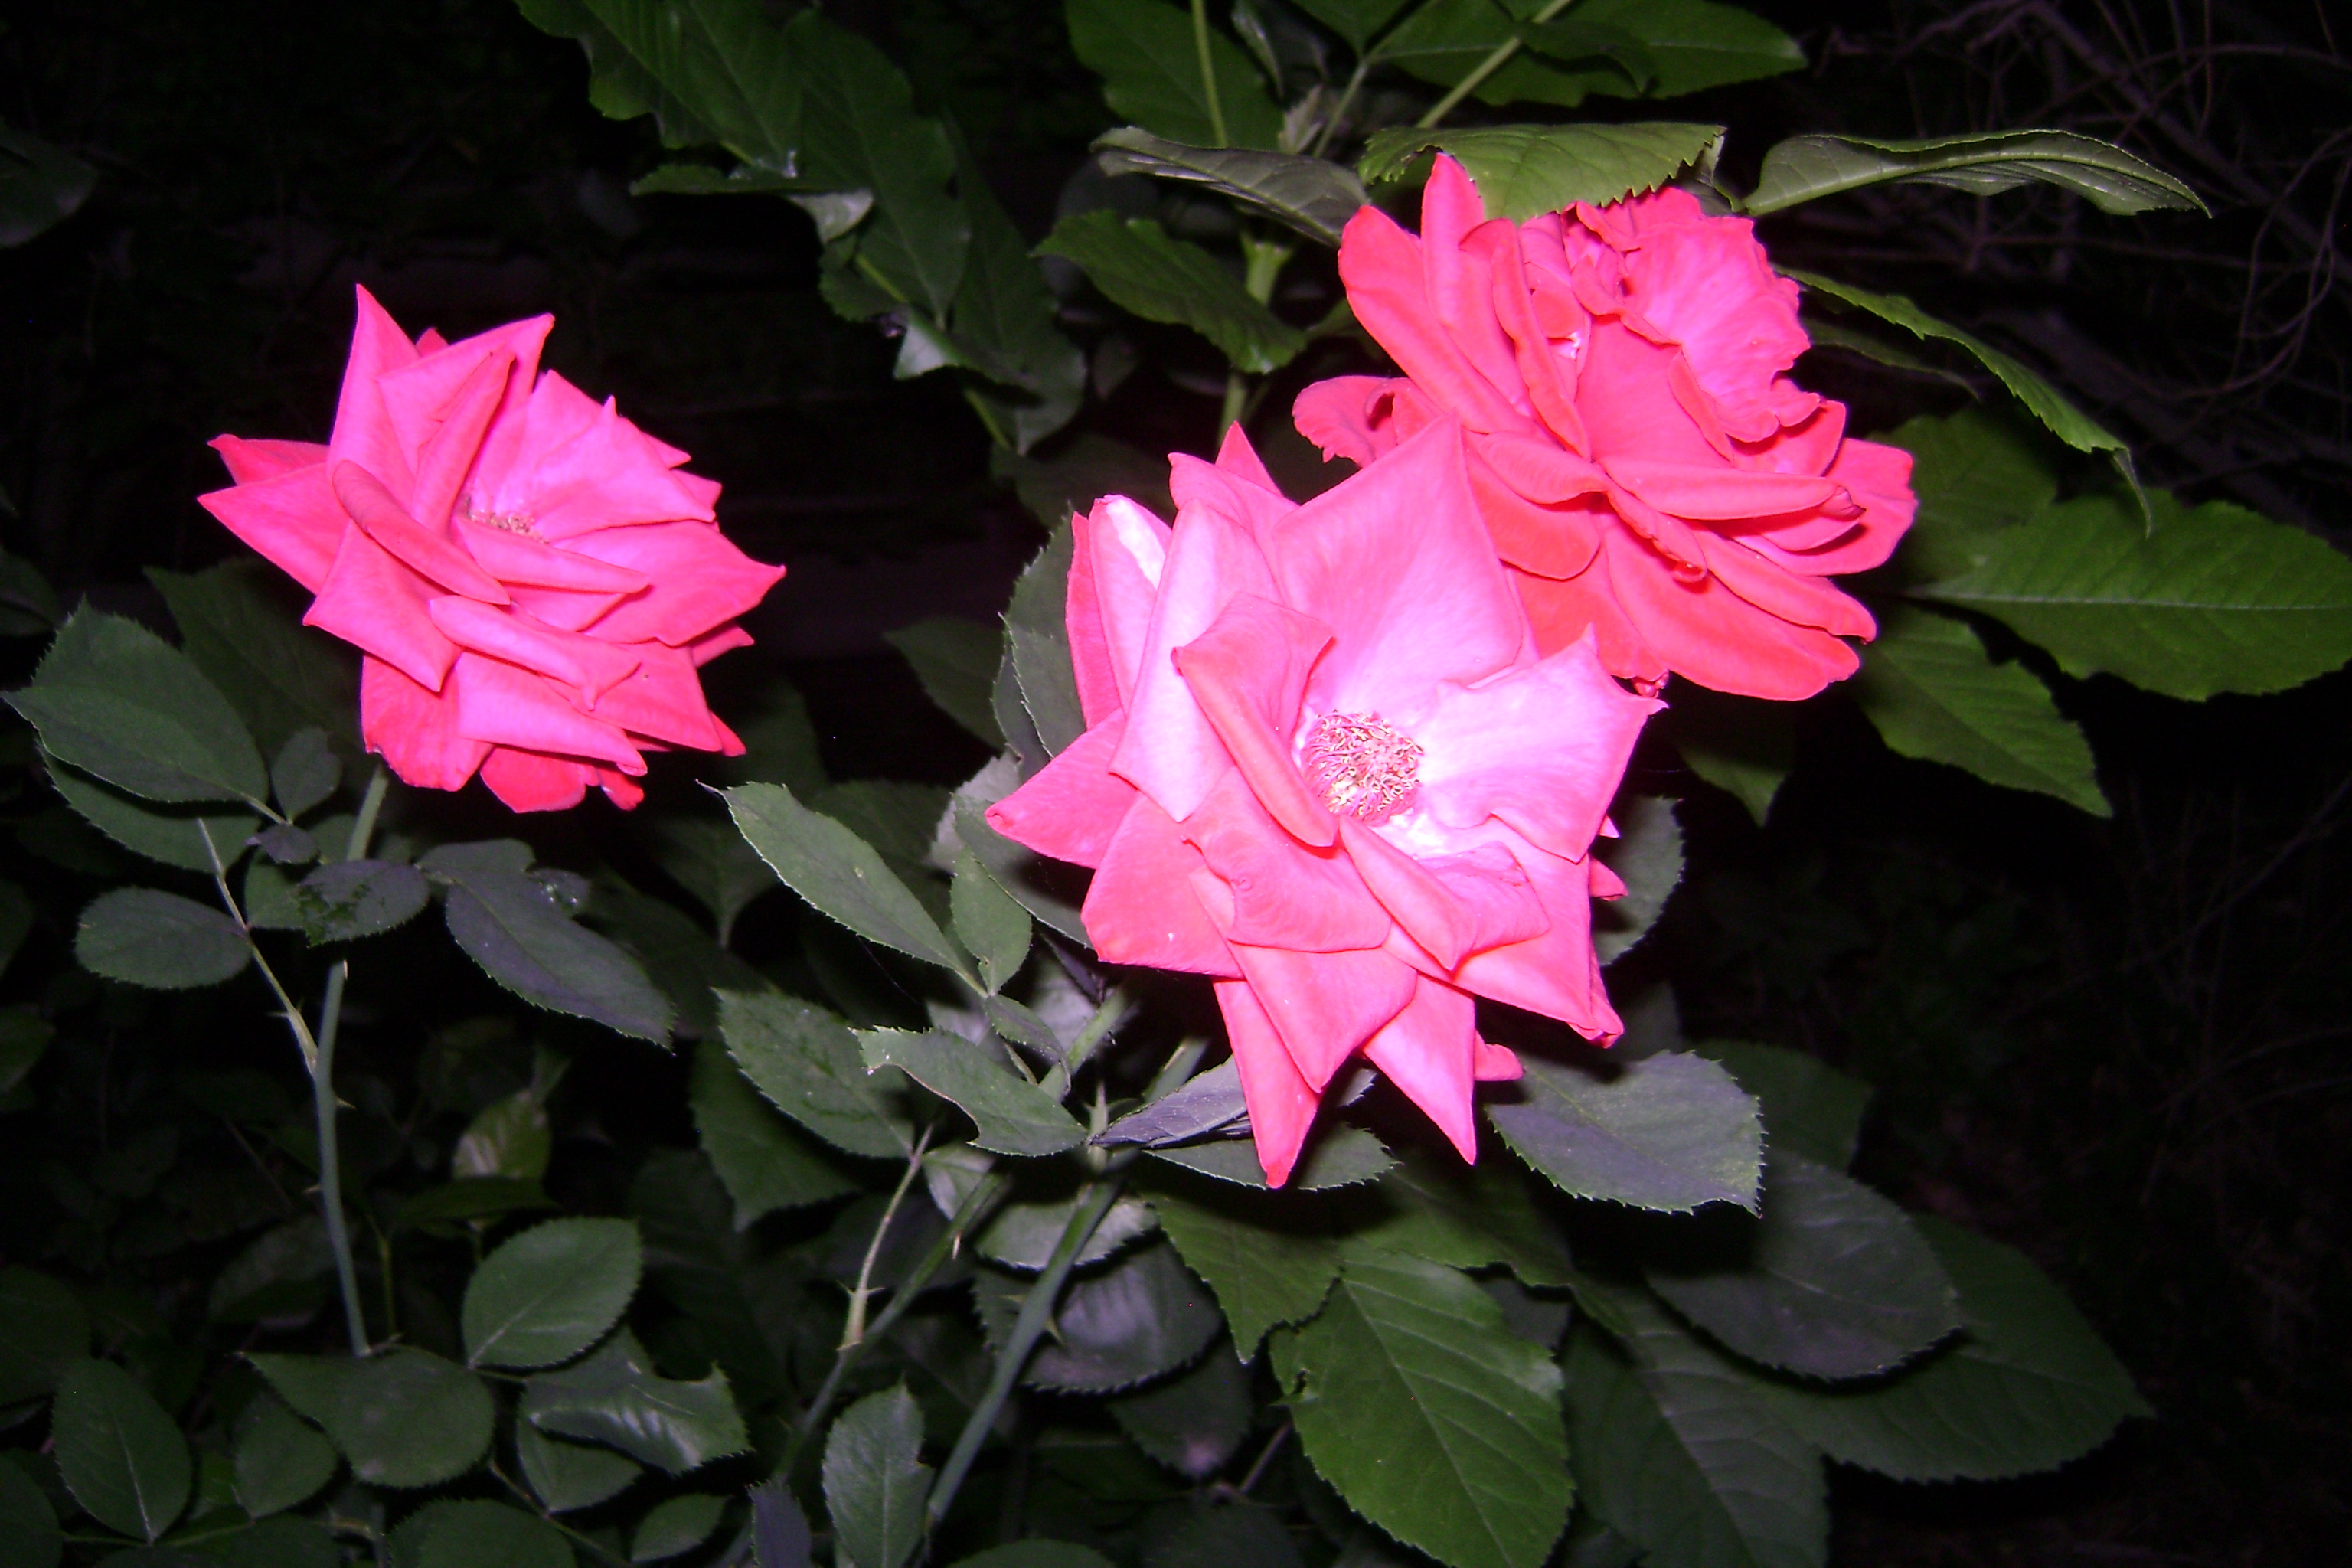 Roses in my Mom's backyard.